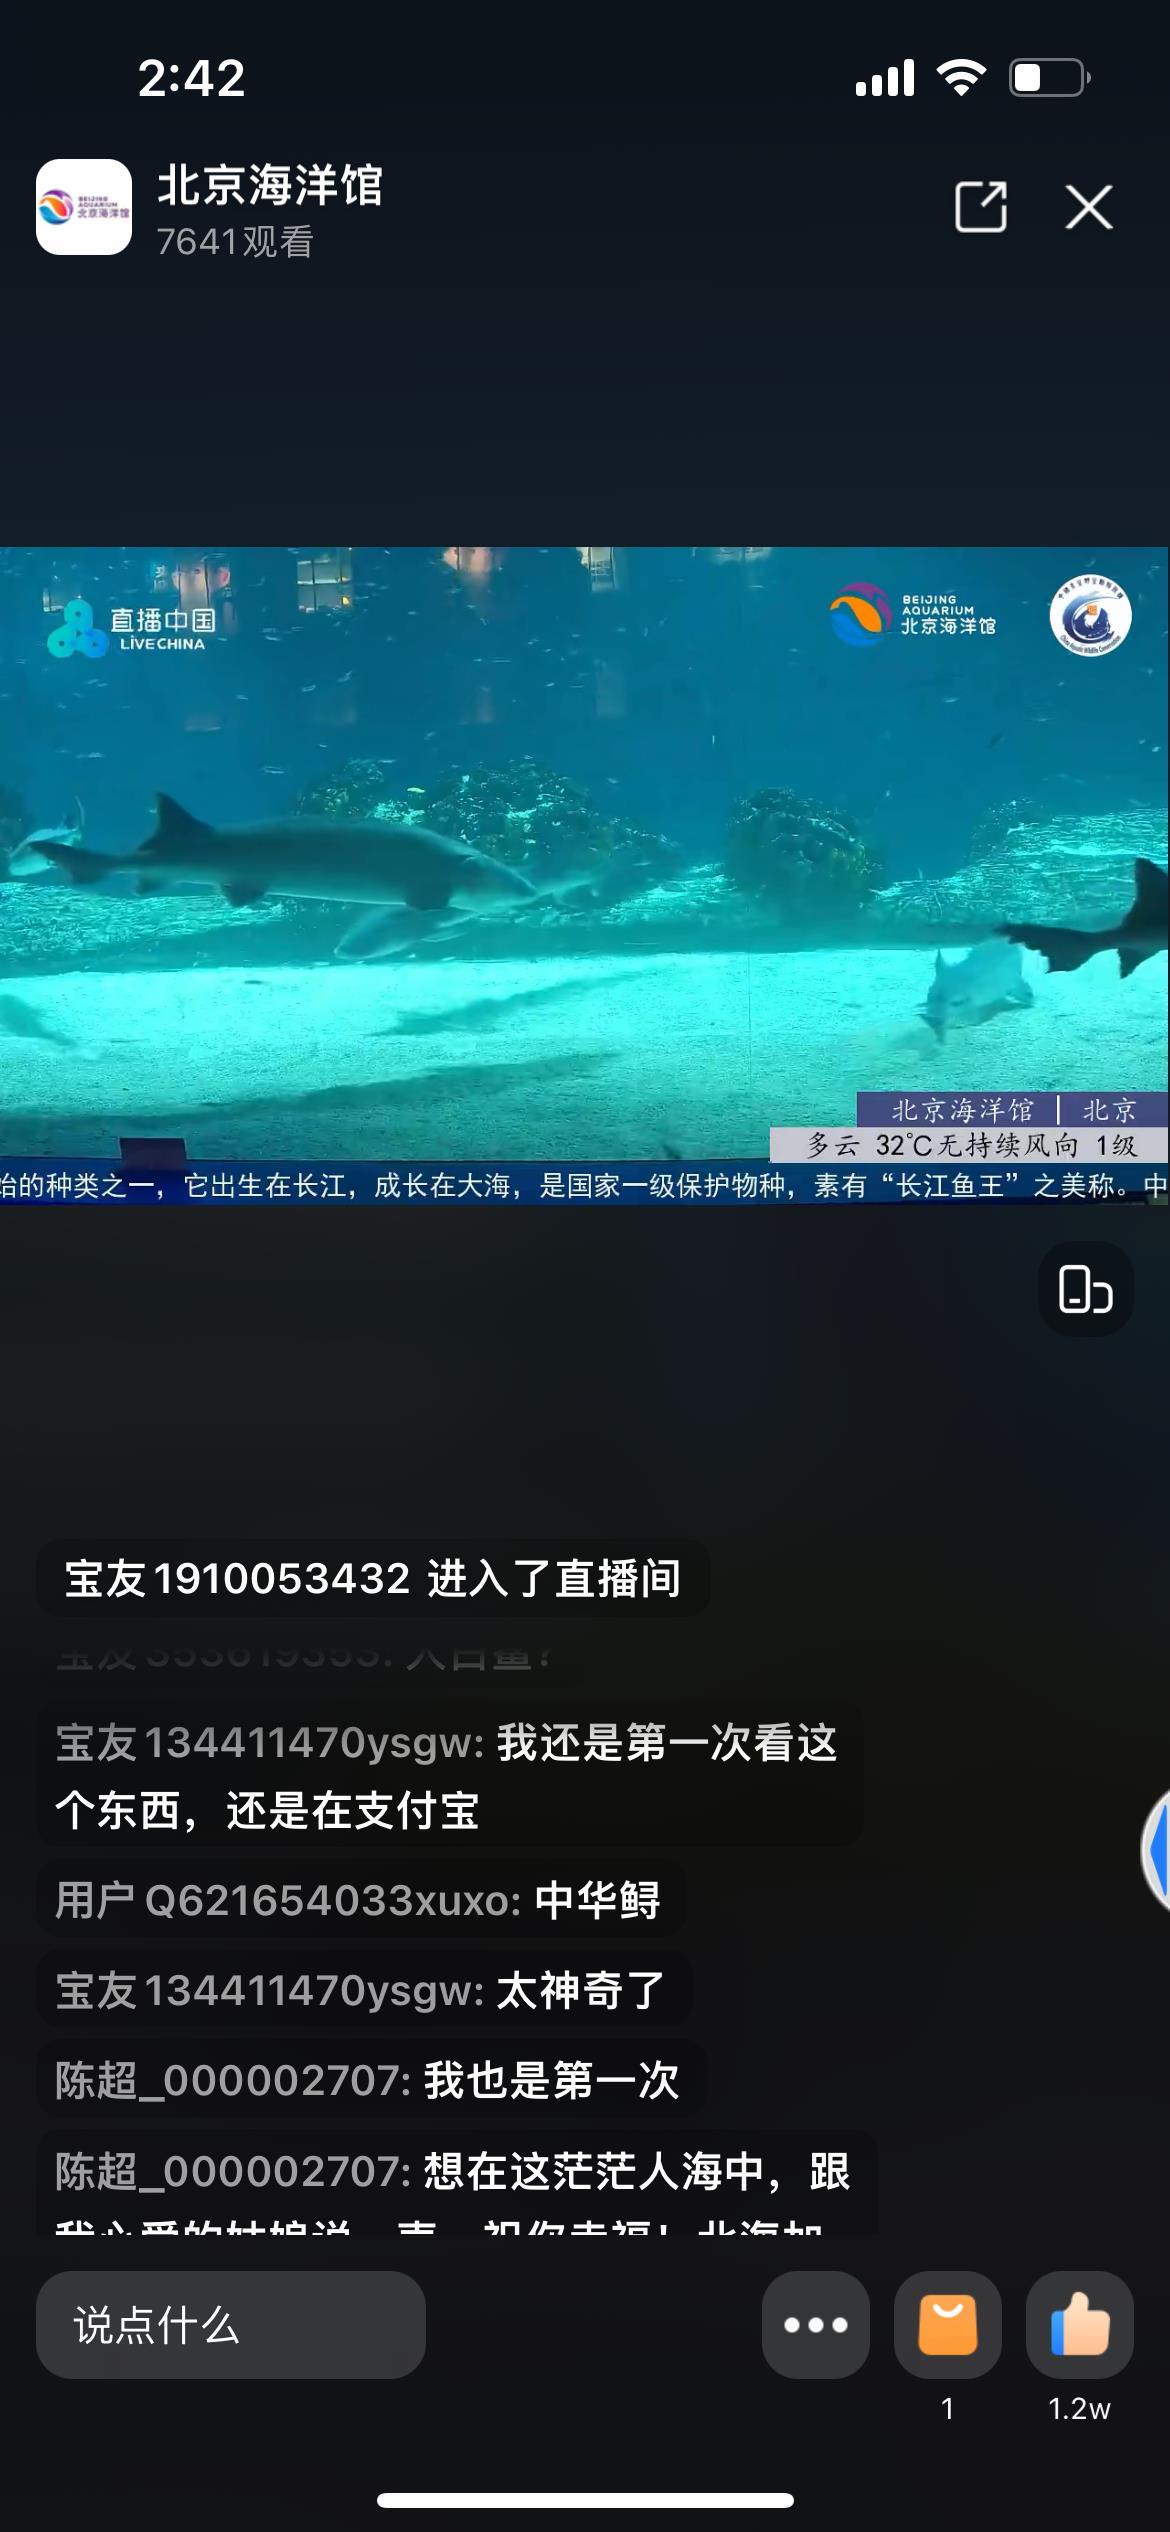 几度闭馆，门票销售额反增29倍，北京海洋馆做对了什么？